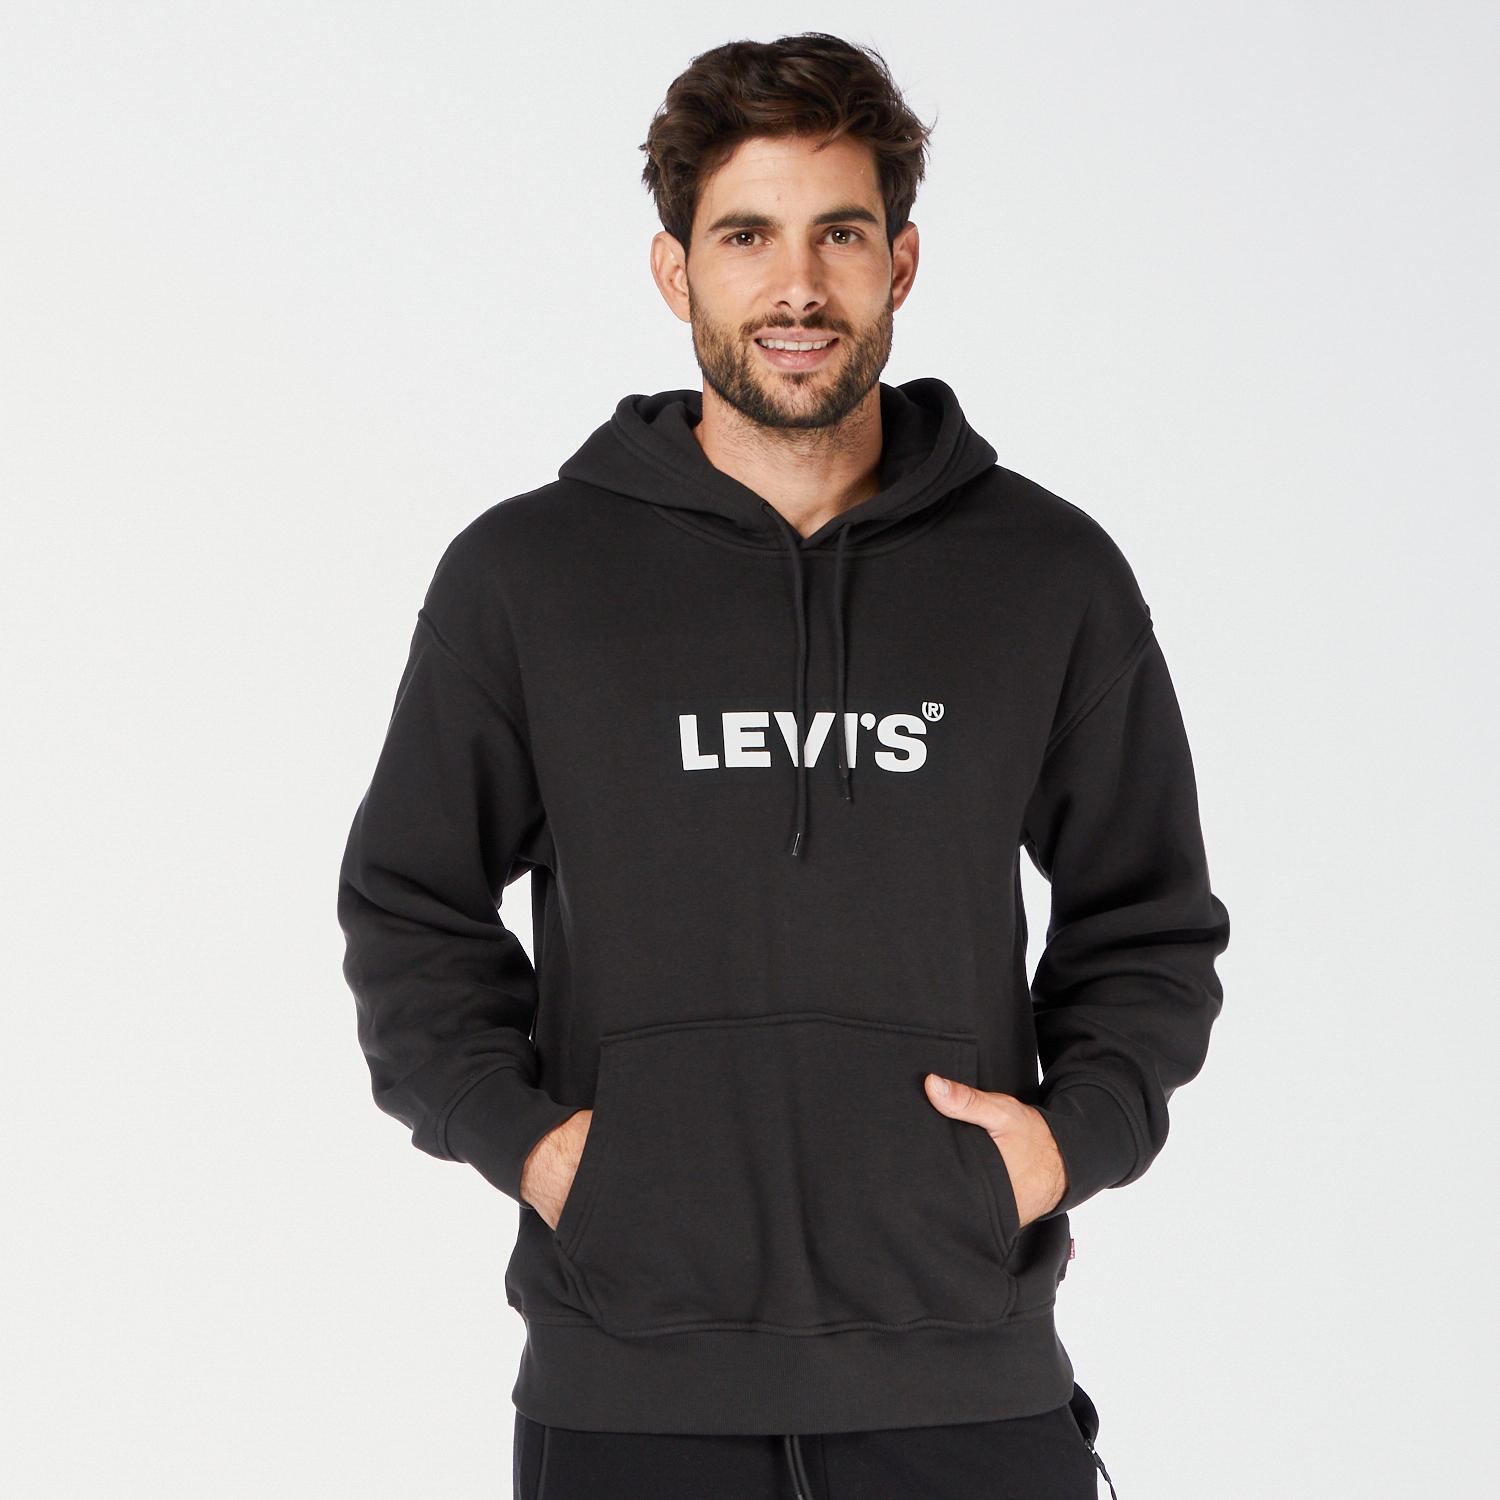 Levi's Original - Caqui - Sweatshirt Homem tamanho M